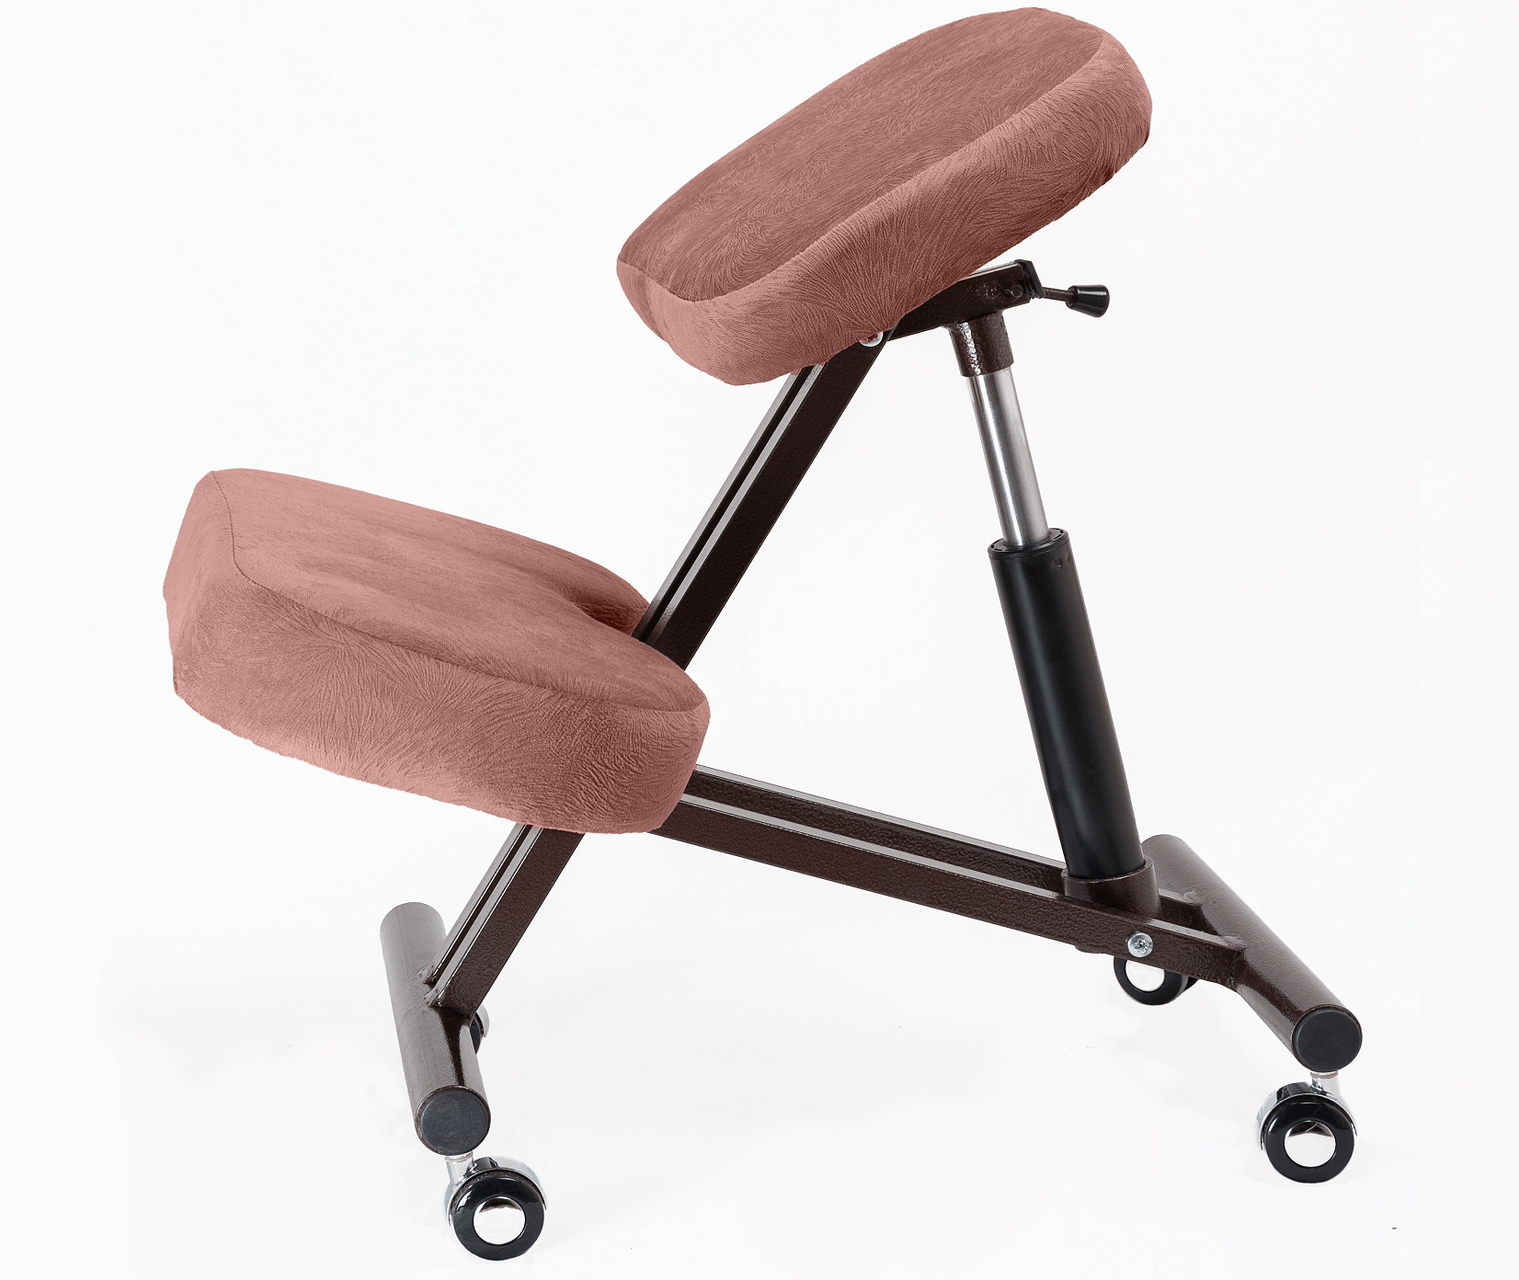 Показания к использованию коленного стула, его разновидности 51 - ДиванеТТо